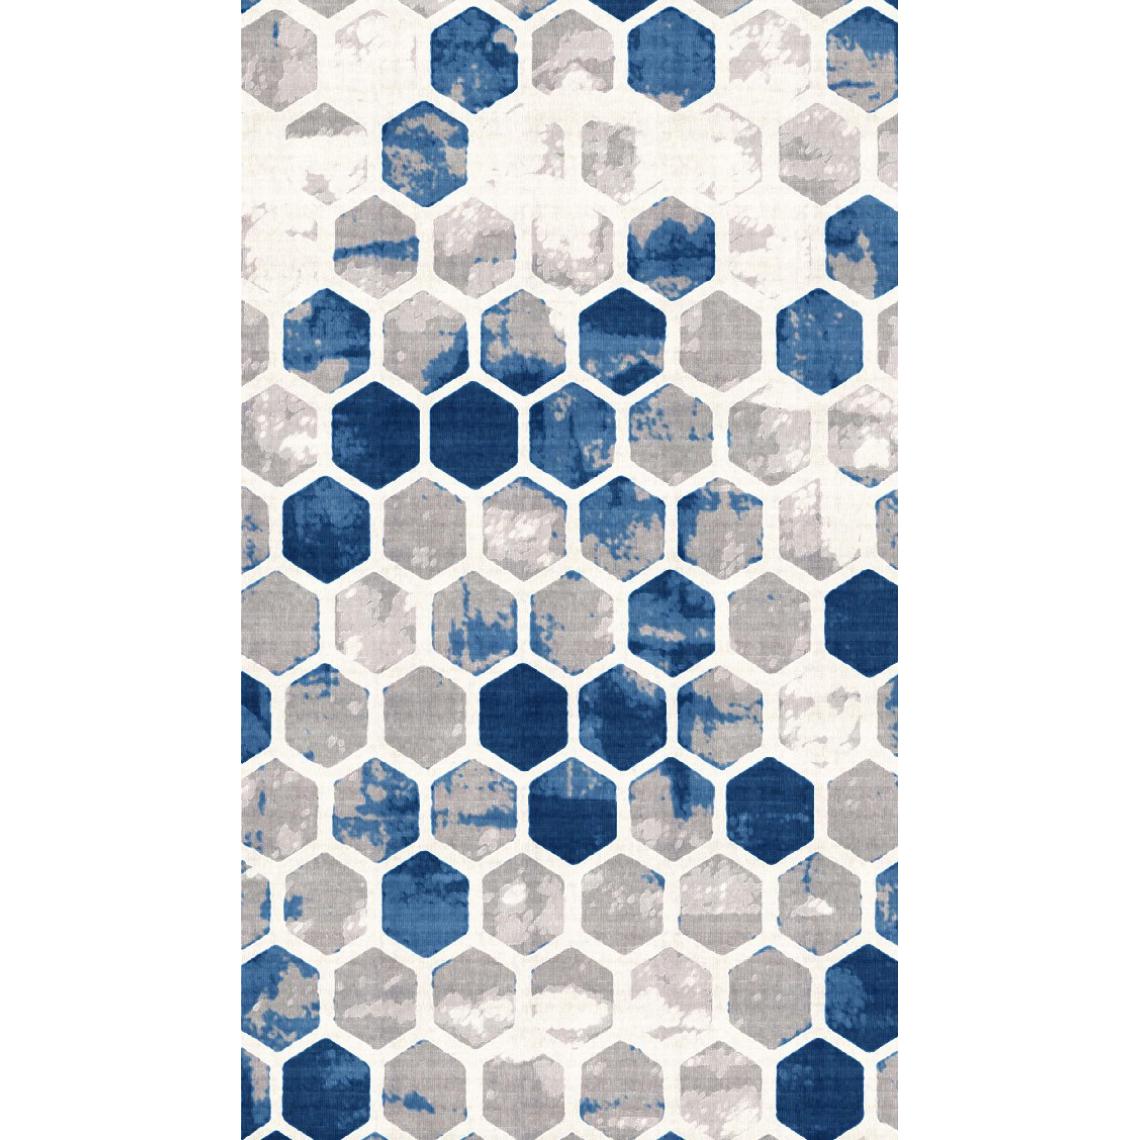 Homemania - HOMEMANIA Tapis Imprimé Hive 1 - Géométrique - Décoration de Maison, tapis d'entrée - Antidérapant - pour Couloir, Cuisine, Chambre, Salon - Multicolore en Polyester, Coton, 80 x 200 cm - Tapis